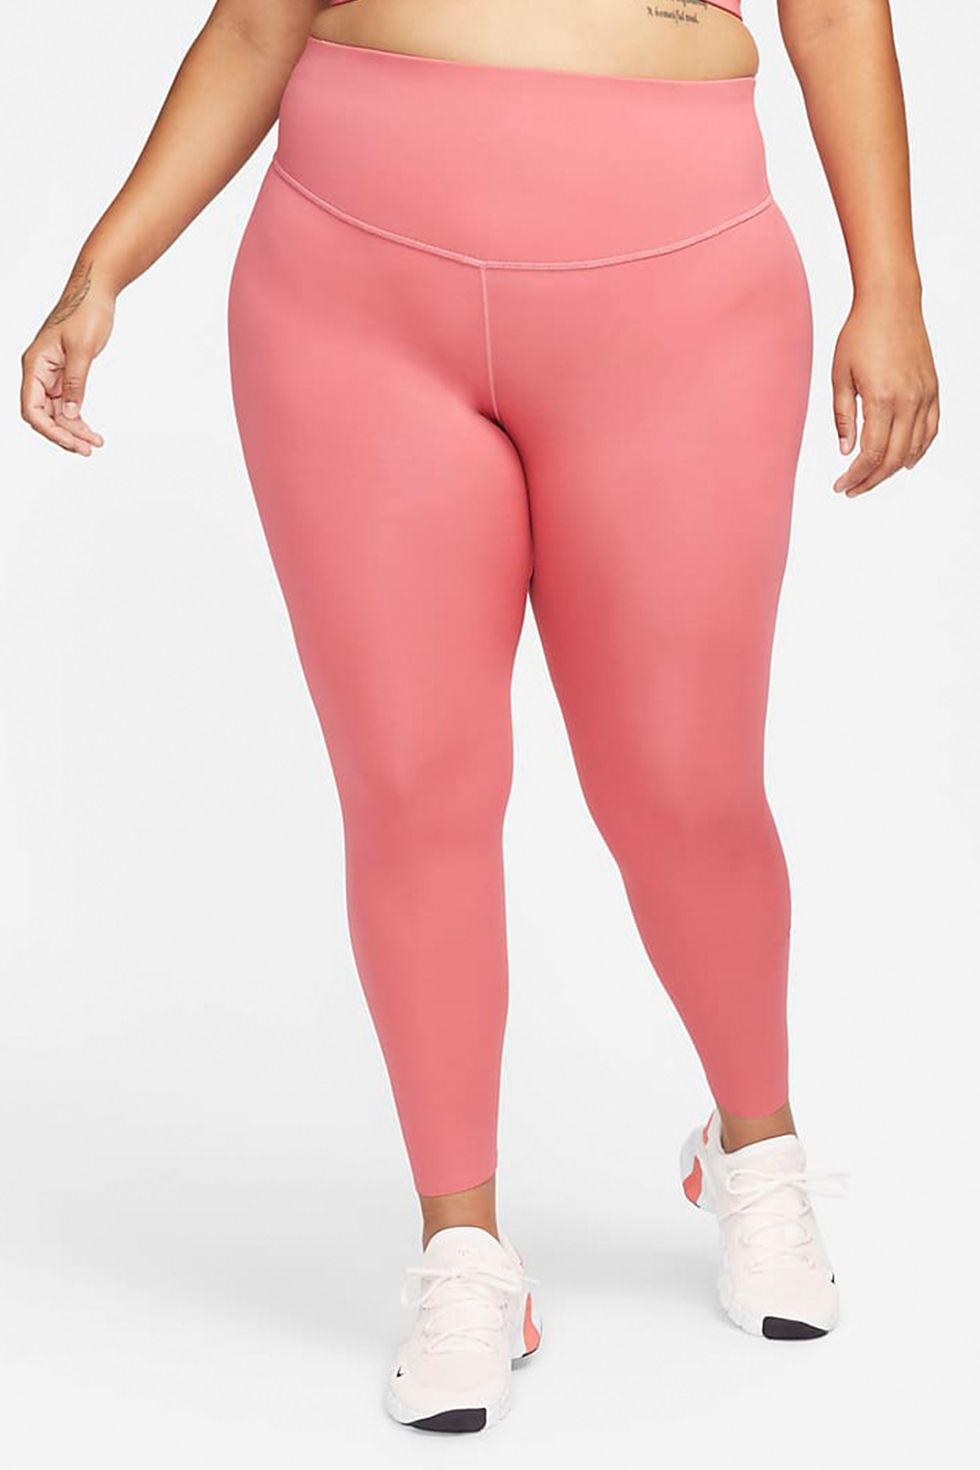 Nike Yoga Plus Dri-FIT high rise 7/8 leggings in pink